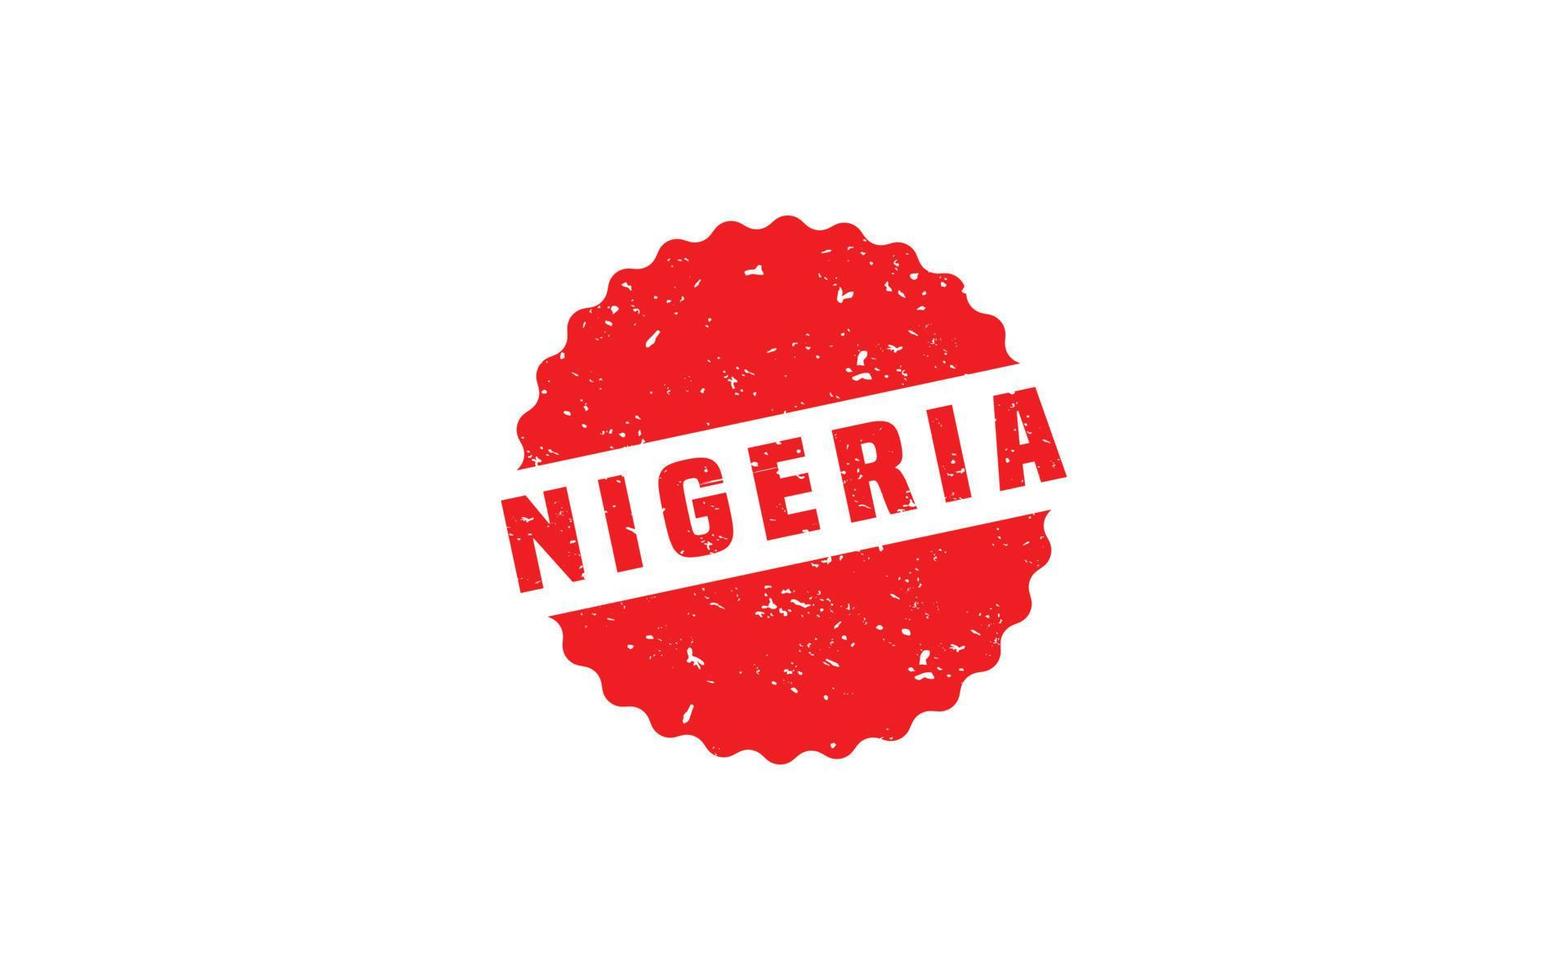 Caoutchouc de timbre du Nigeria avec style grunge sur fond blanc vecteur